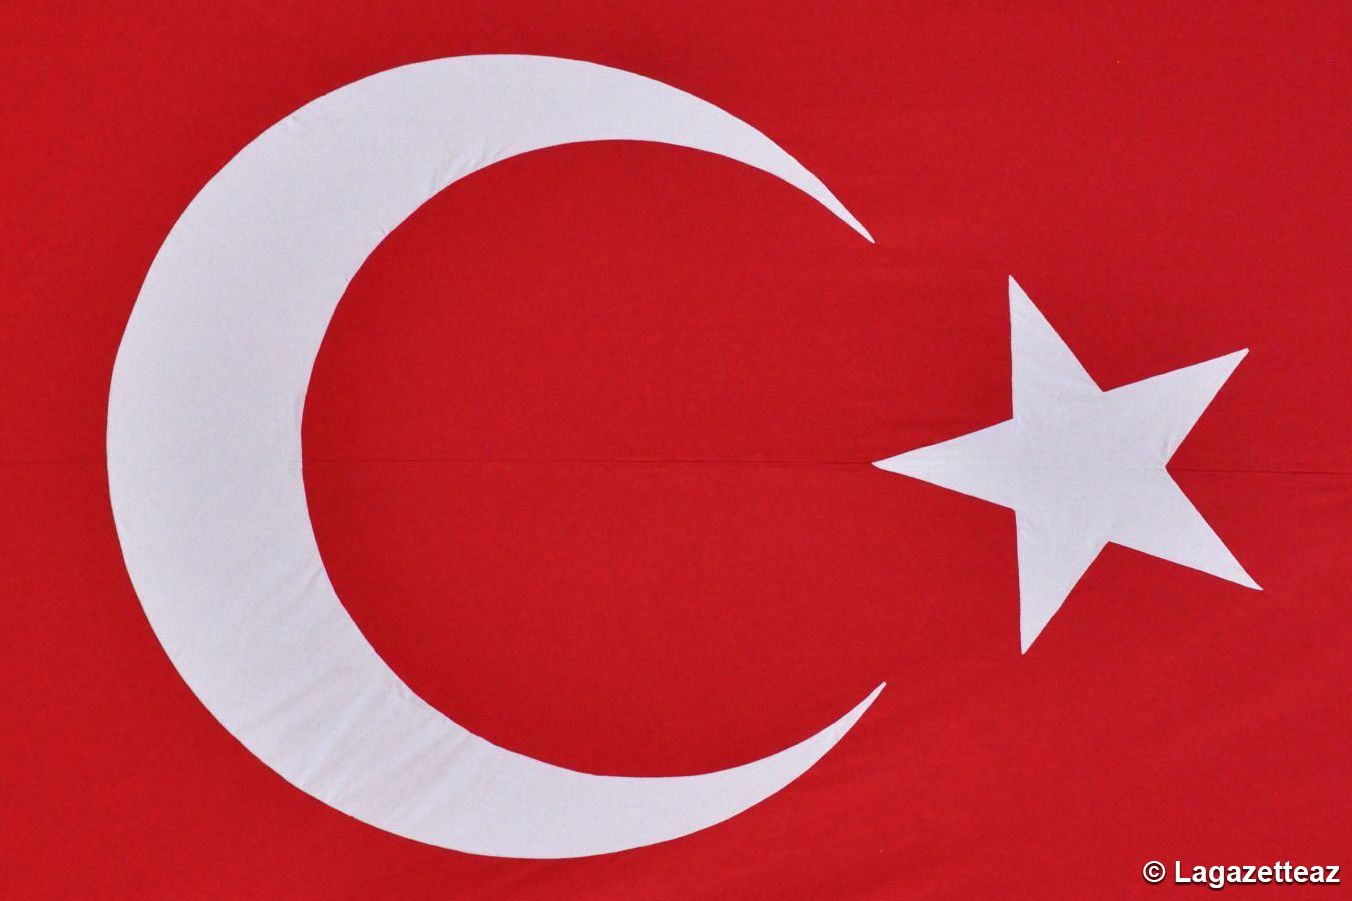 En avril, le chiffre d'affaires de la Turquie avec le Kazakhstan a diminué